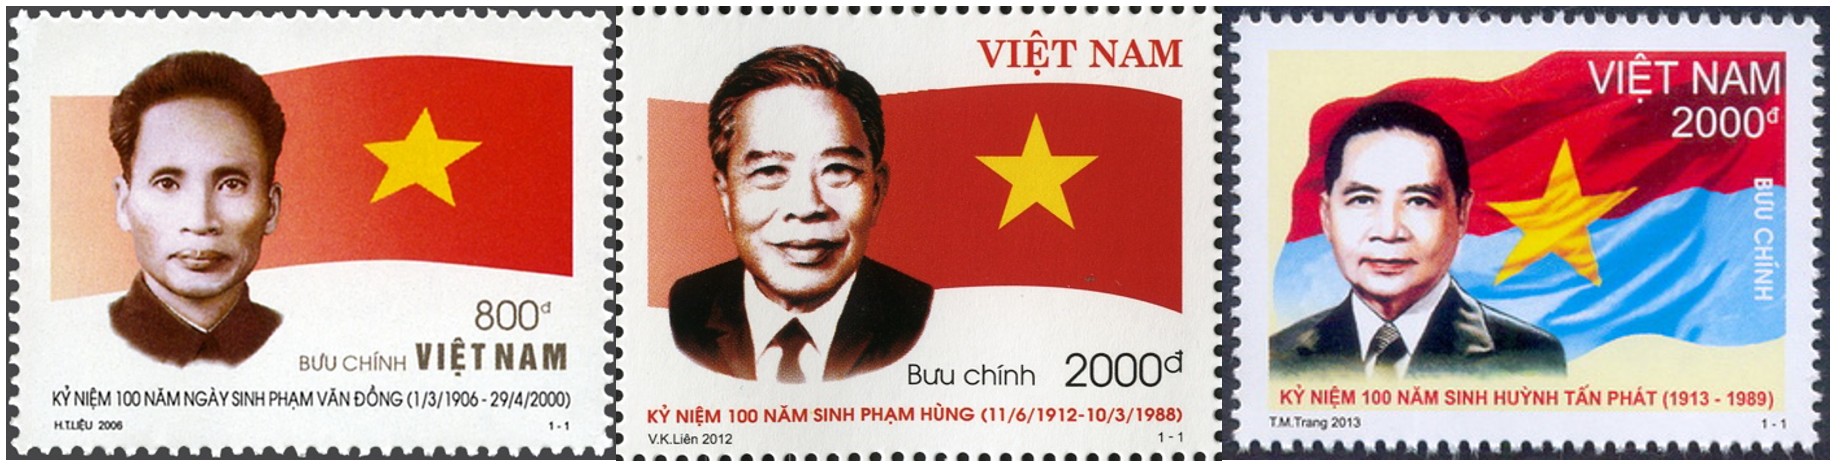 Bộ tem kỷ niệm 100 năm sinh Thủ tướng Võ Văn Kiệt - Ảnh 2.